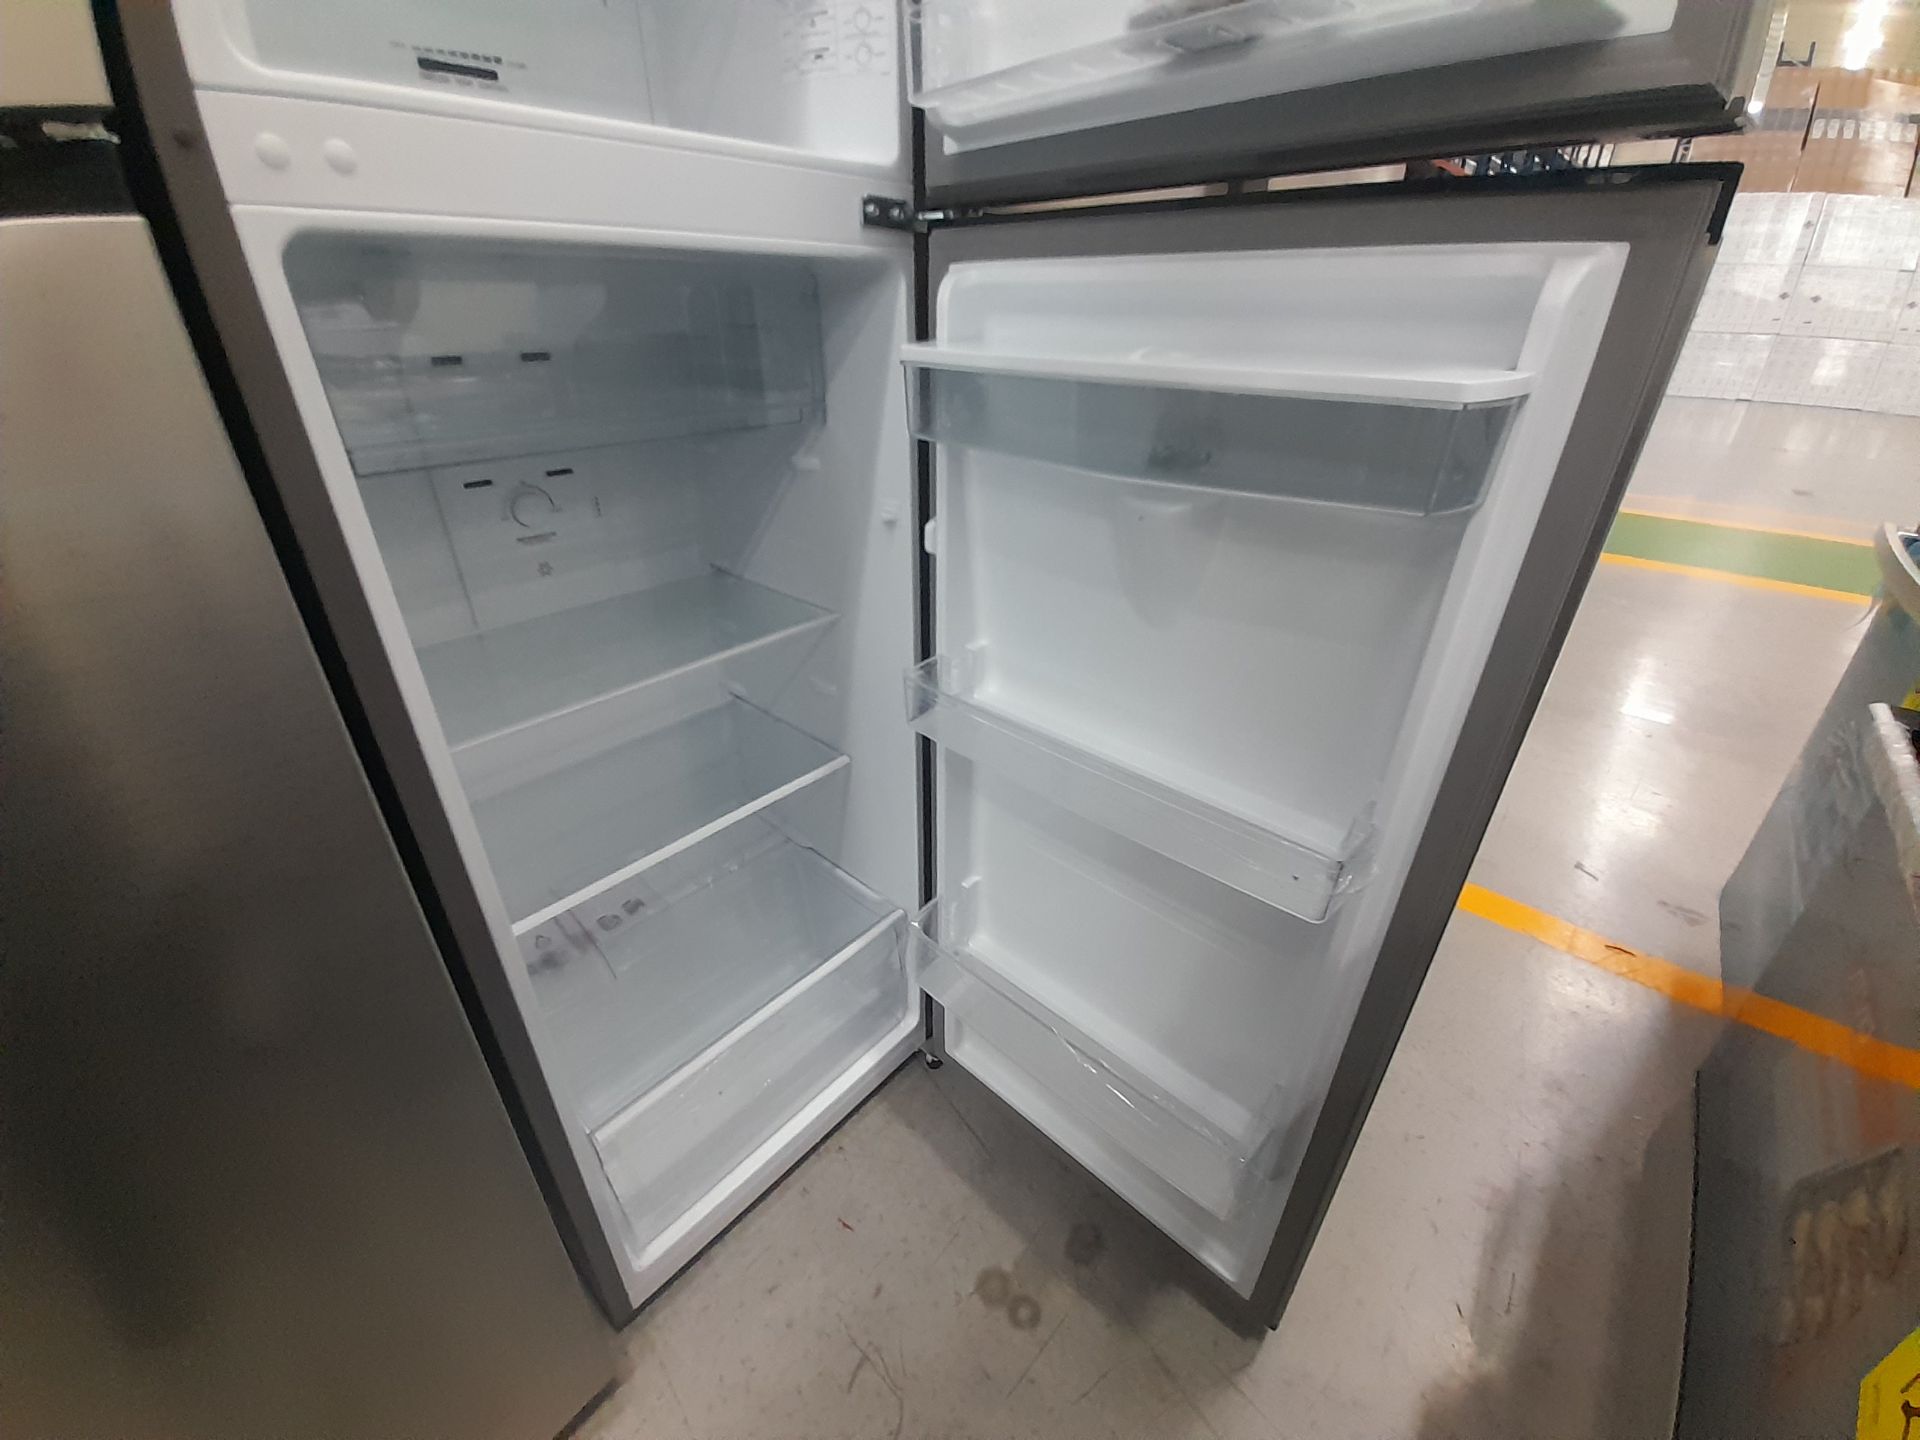 Lote de 2 Refrigeradores contiene: 1 Refrigerador con dispensador de agua Marca HISENSE, Modelo - Image 7 of 7